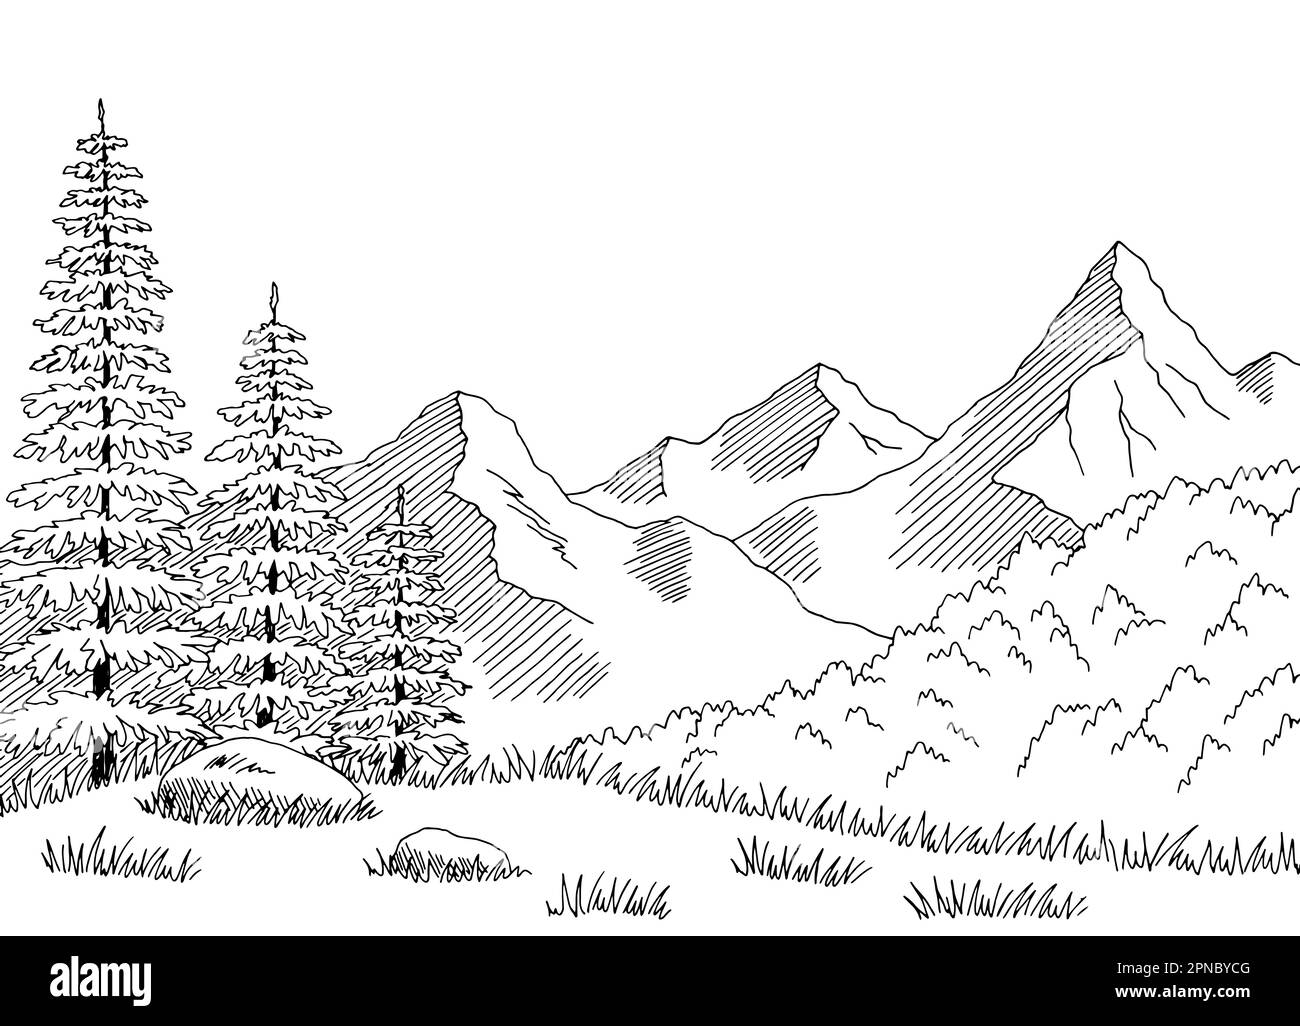 Taiga bosque montañas colina gráfico paisaje blanco negro ilustración vectorial Ilustración del Vector